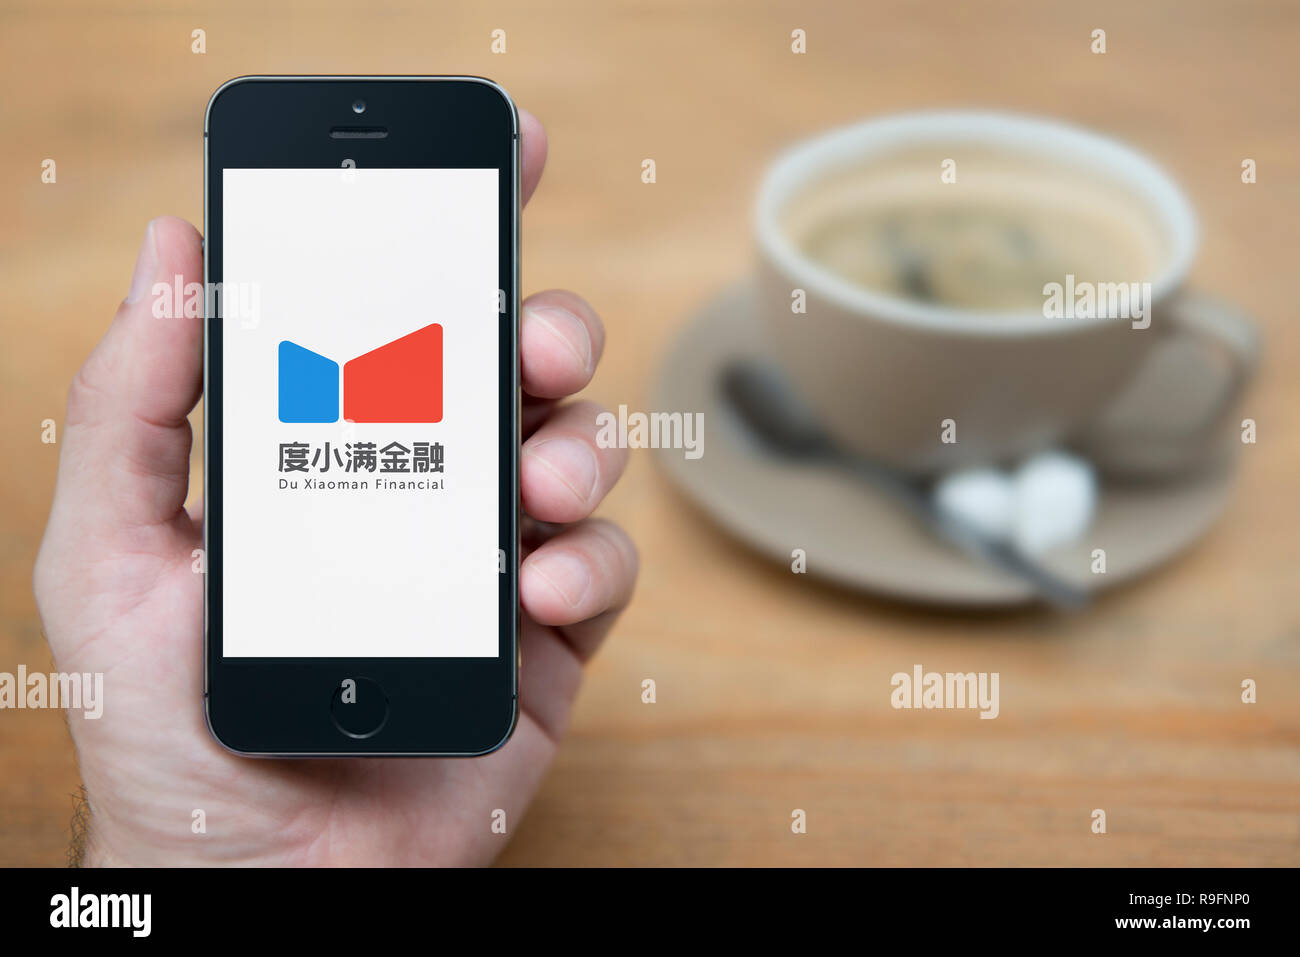 Un homme se penche sur son iPhone qui affiche le logo du financier Xiaoman (usage éditorial uniquement). Banque D'Images